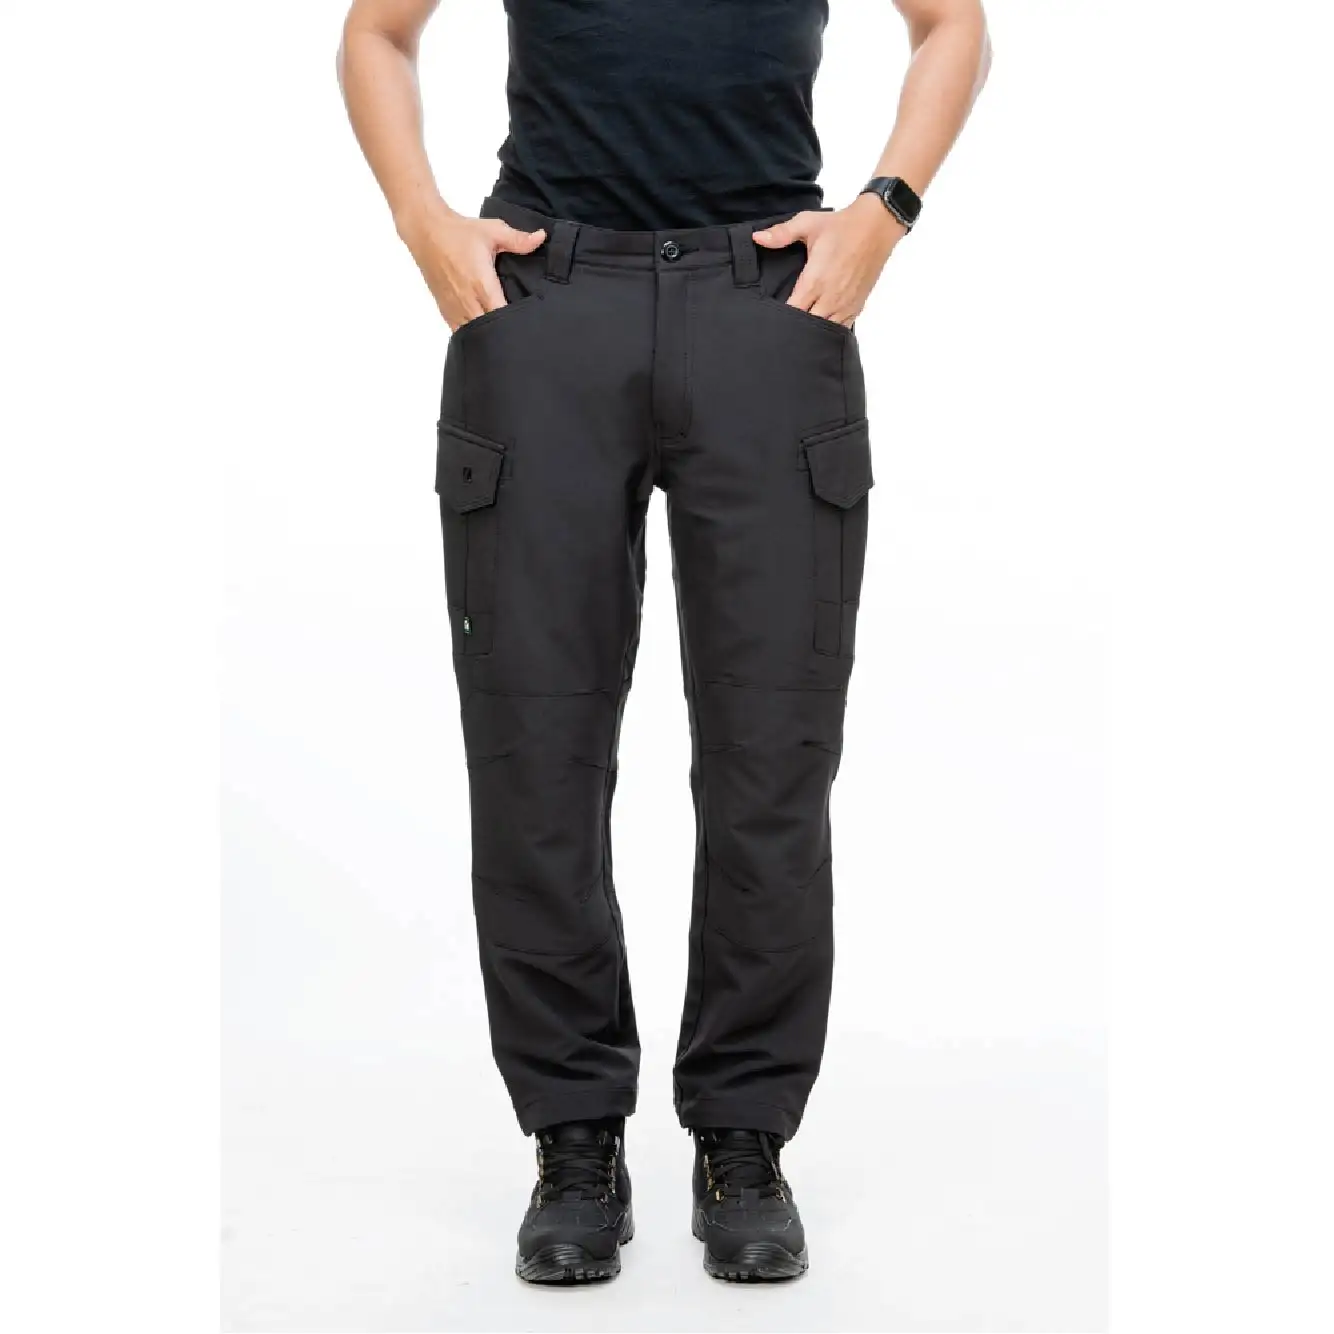 Tüm hava açık Trekking pantolon yüksek performanslı açık Trekking gerilebilir pantolon nefes açık Trekking pantolon